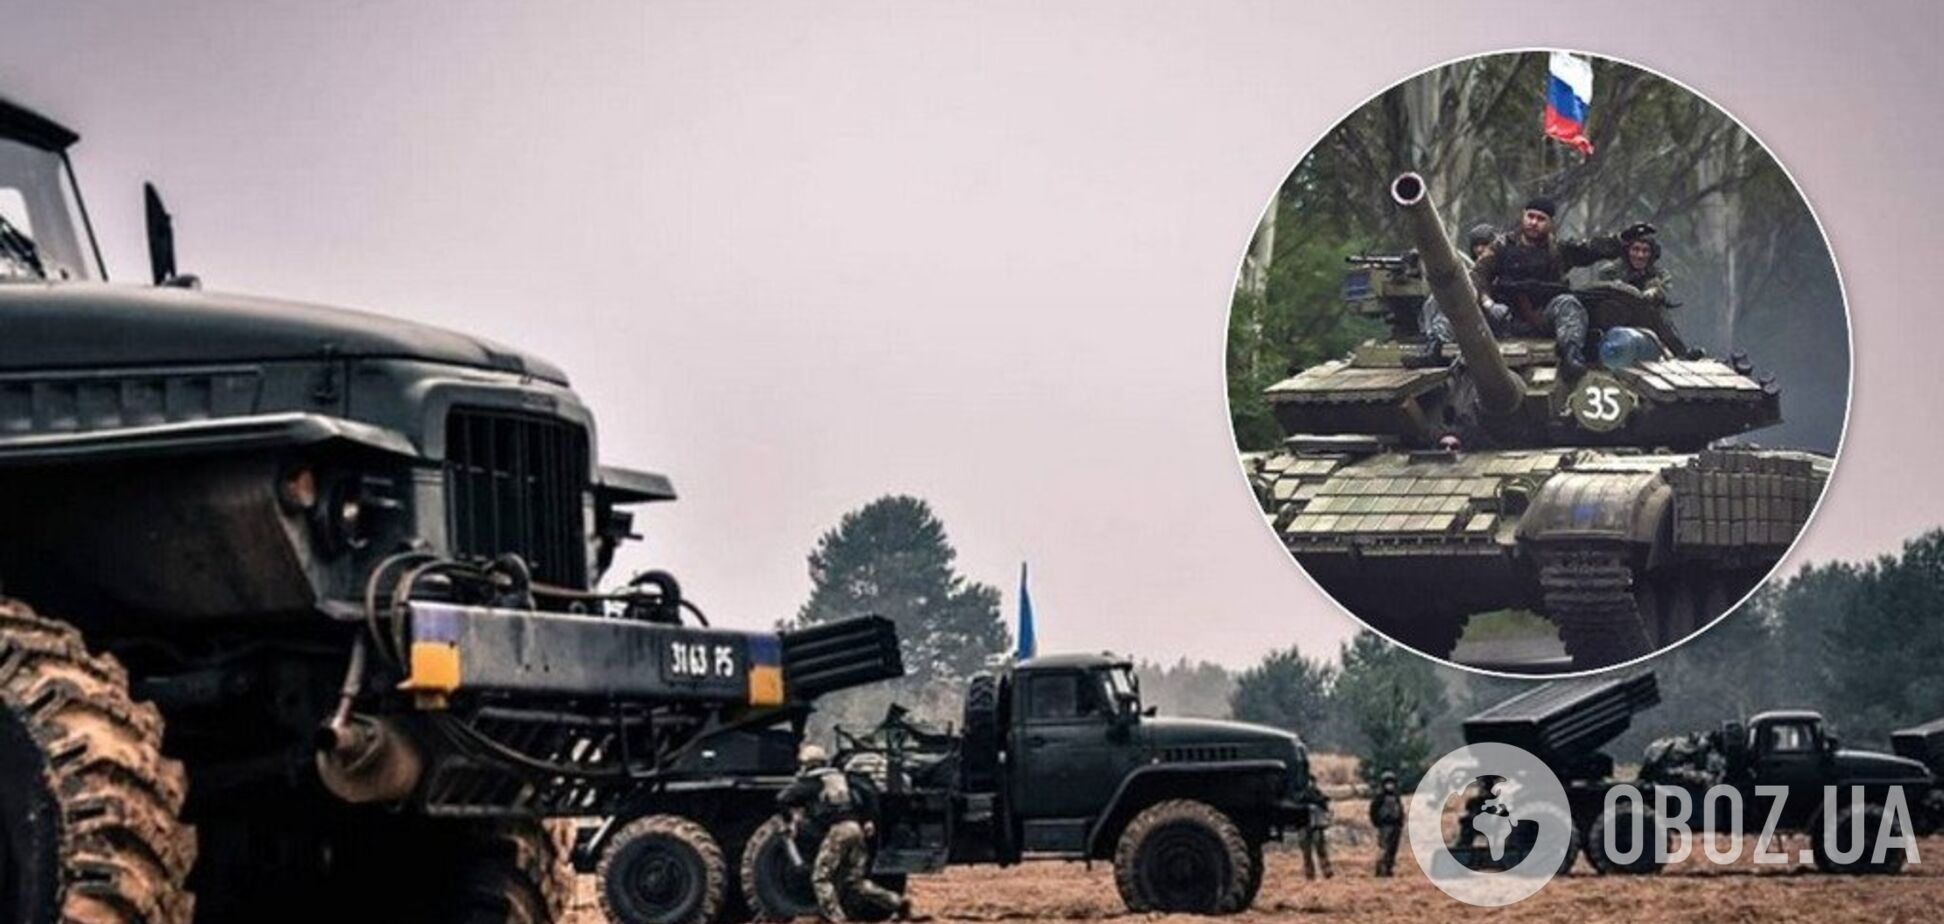 'Це сколихне Україну': генерал заявив про небезпеку масштабного розведення сил